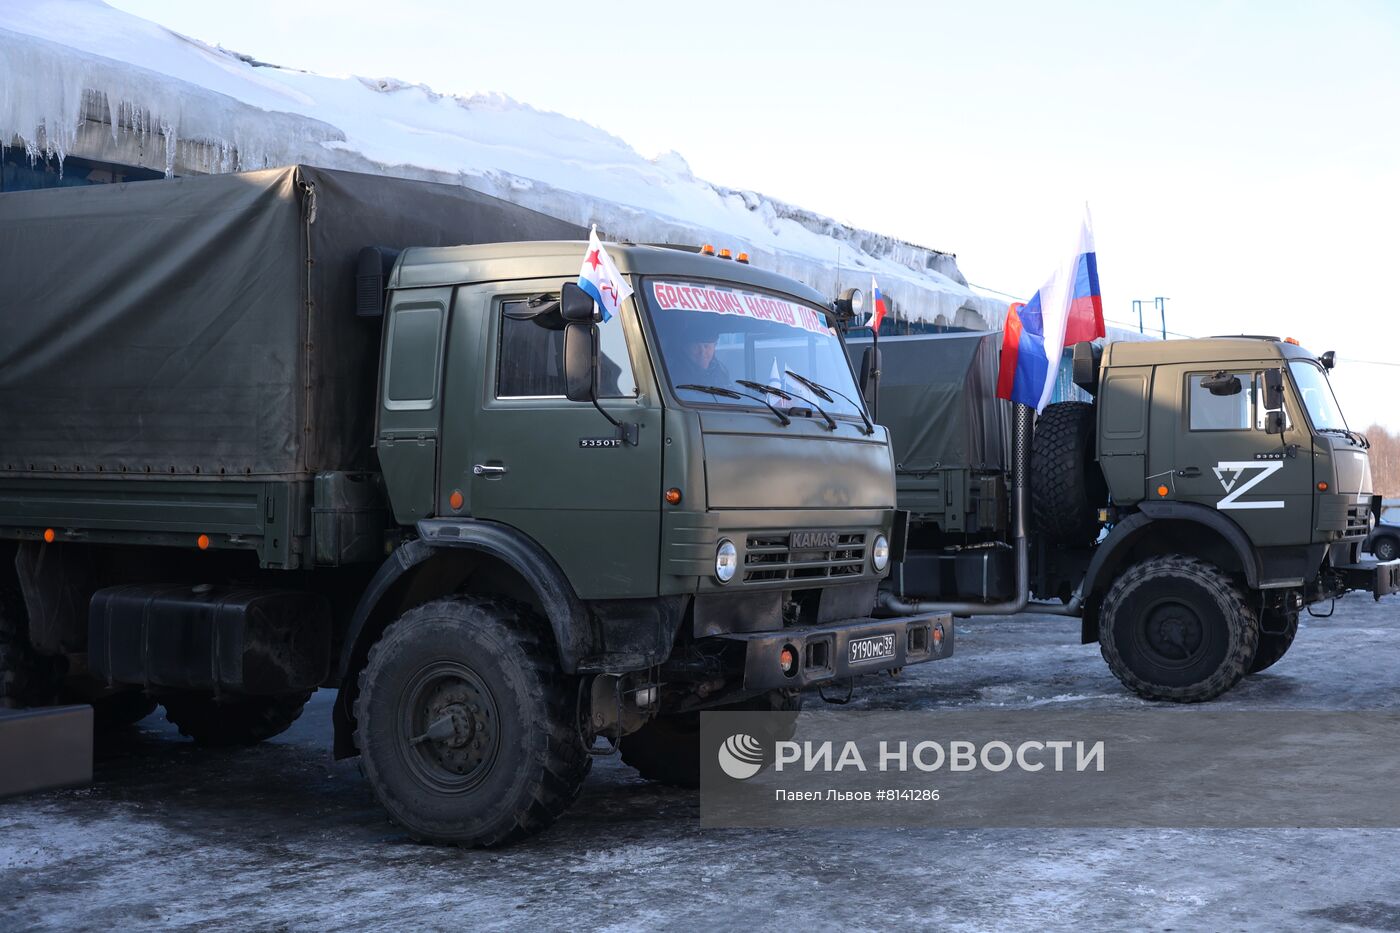 Отправление колонны с гуманитарной помощью для жителей Донбасса из Мурманска